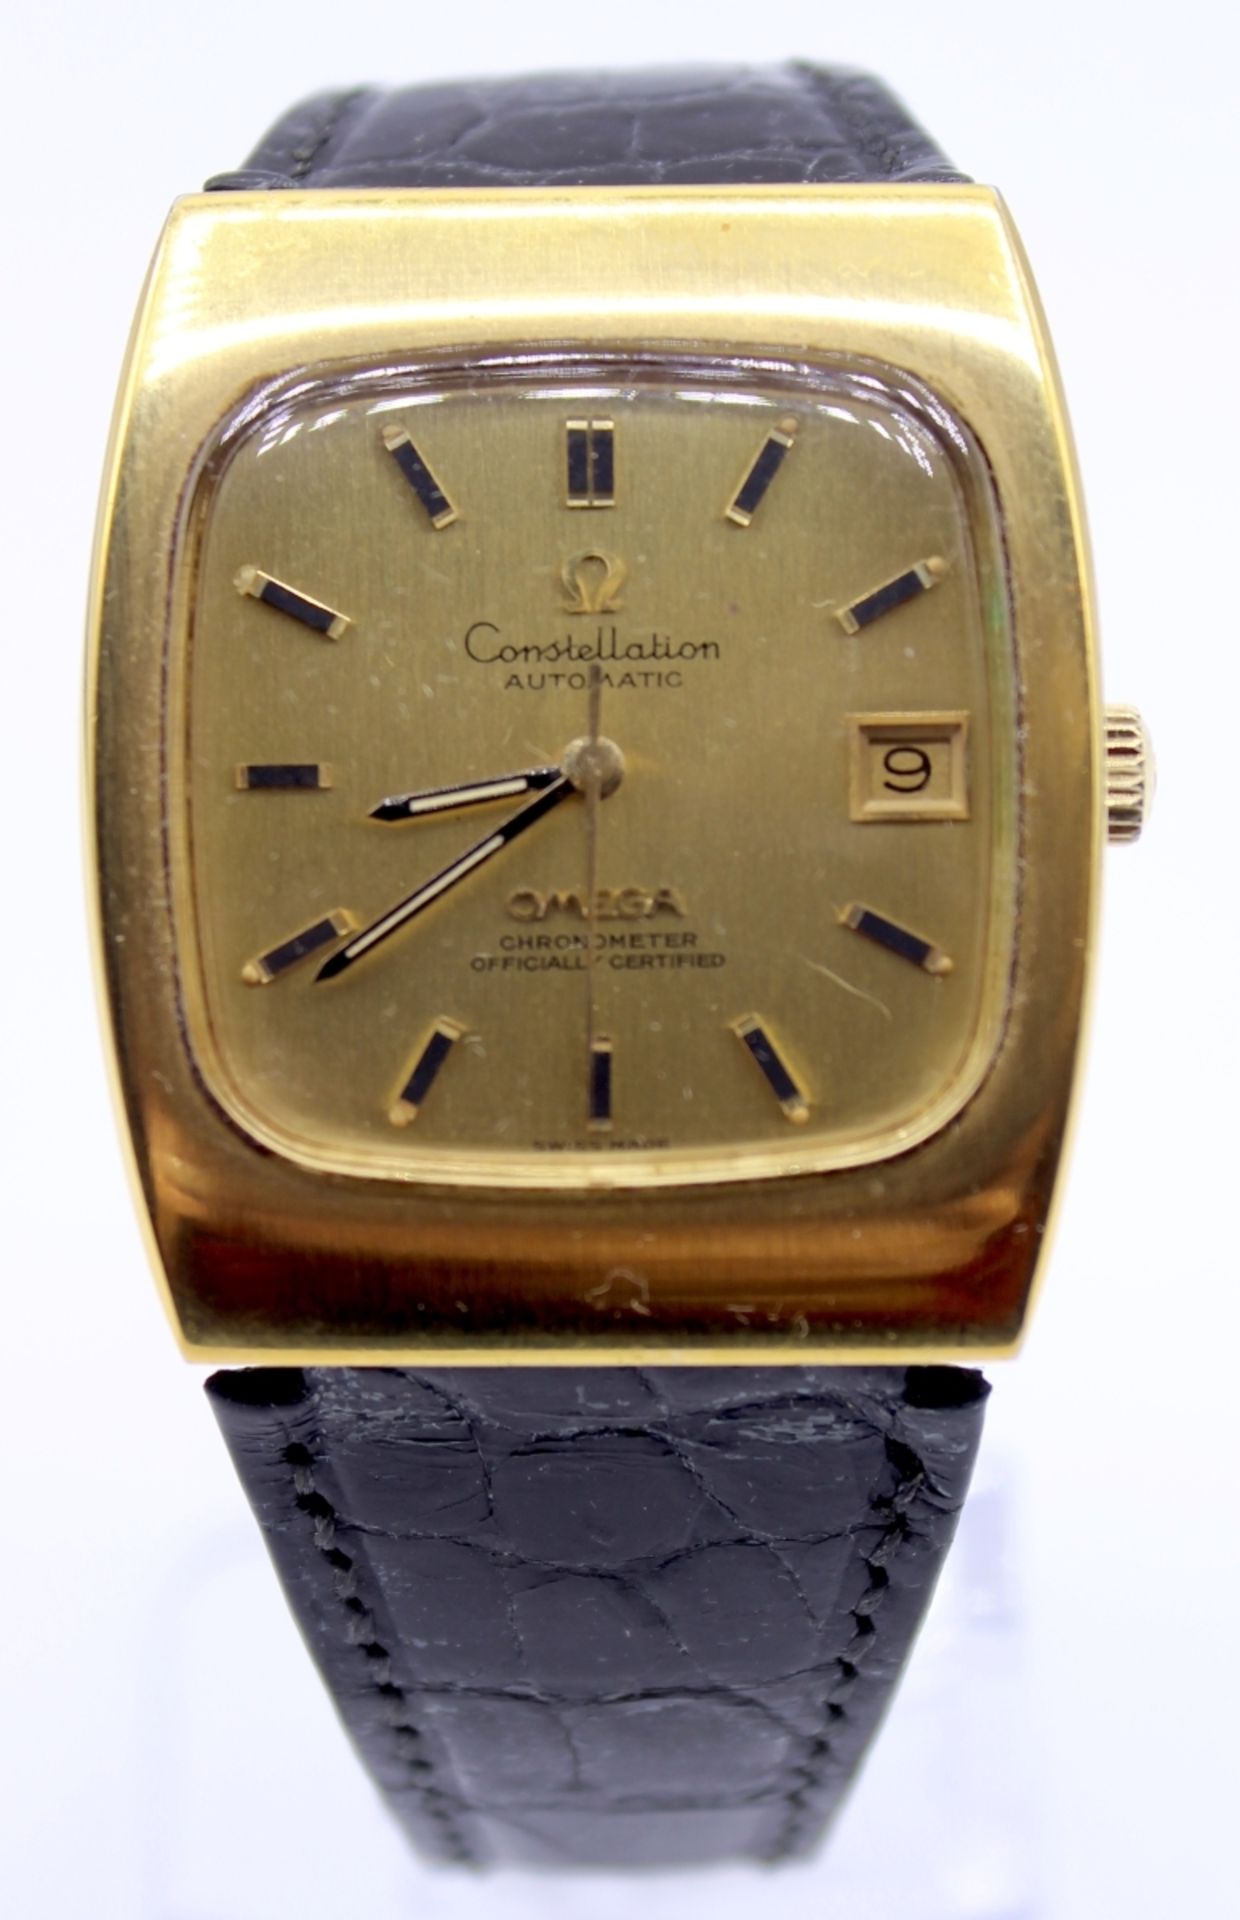 Herrenarmbanduhr - Marke Omega Modell Constellation, Chronometer official certified, schweizer